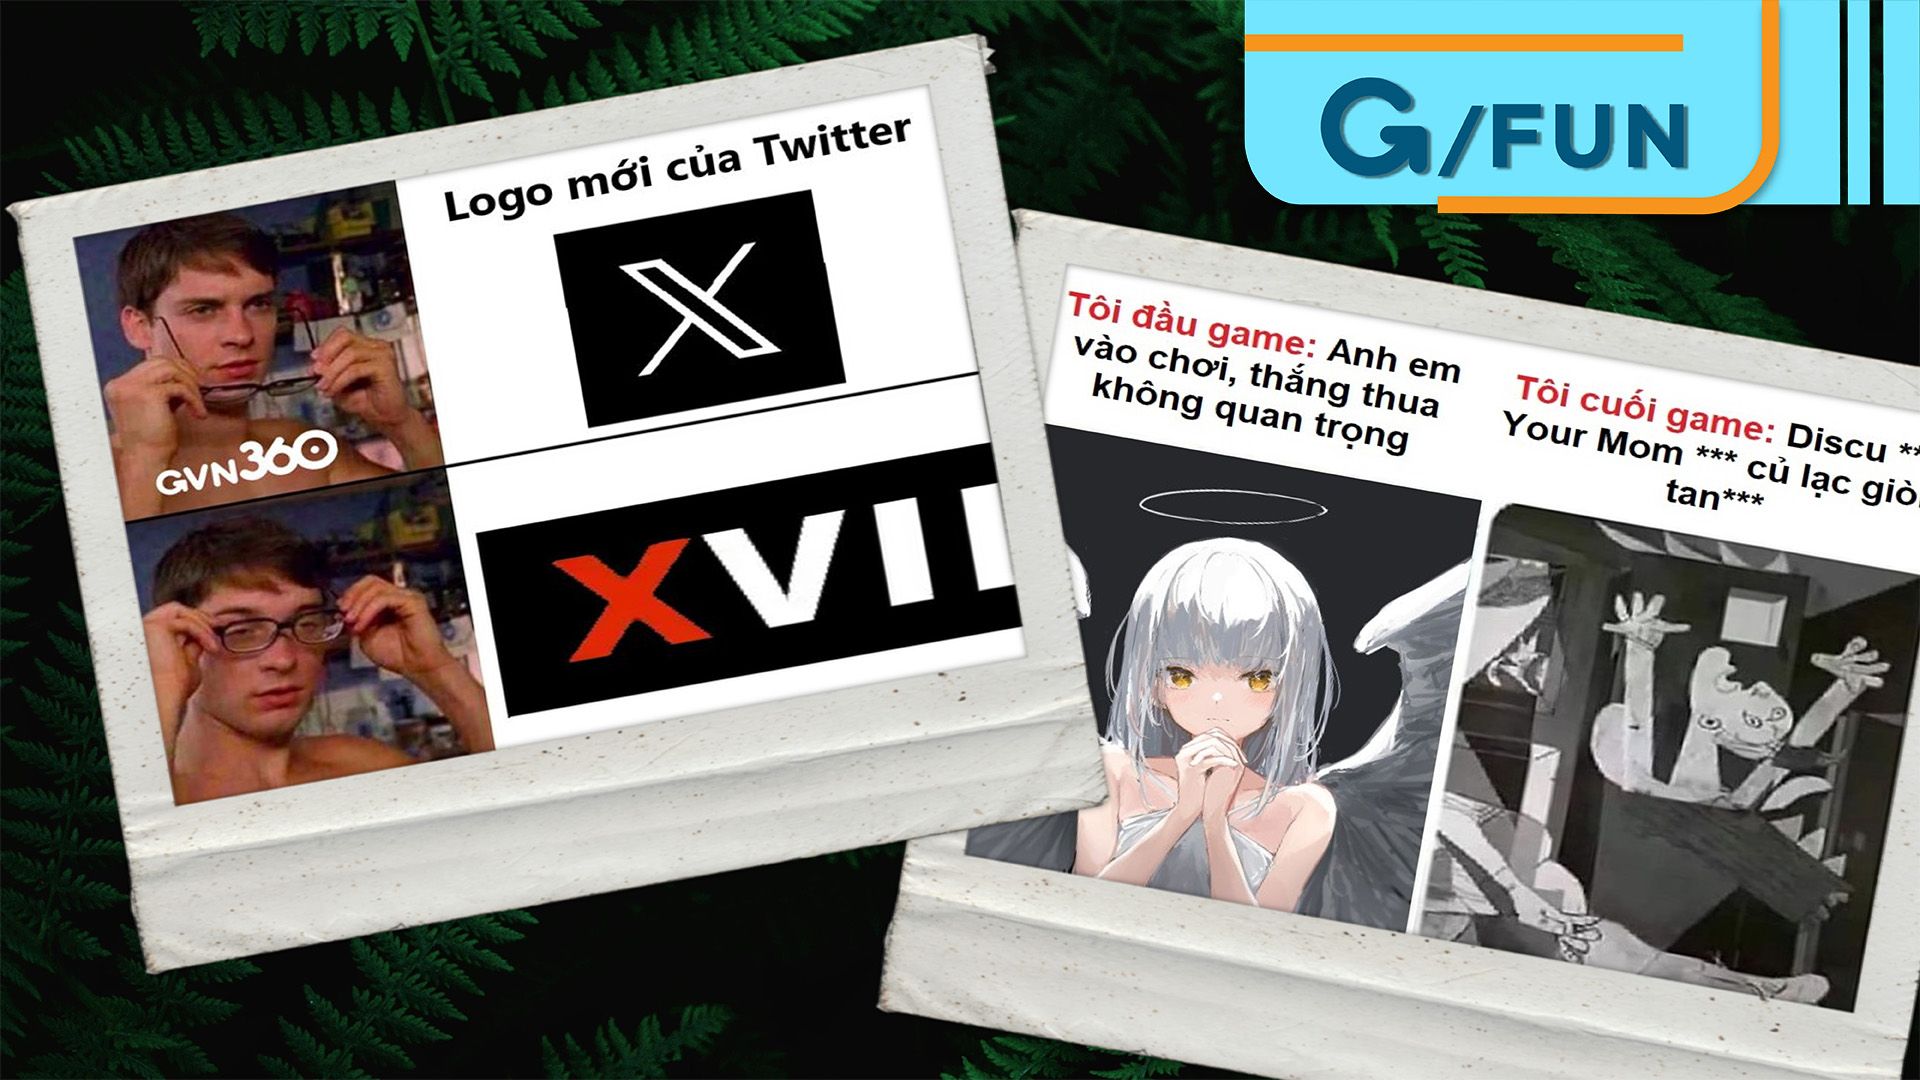 Tổng hợp meme hài hước cuối tuần: Việt Nam thủ thành, Logo Twitter, cái kết của One Piece …